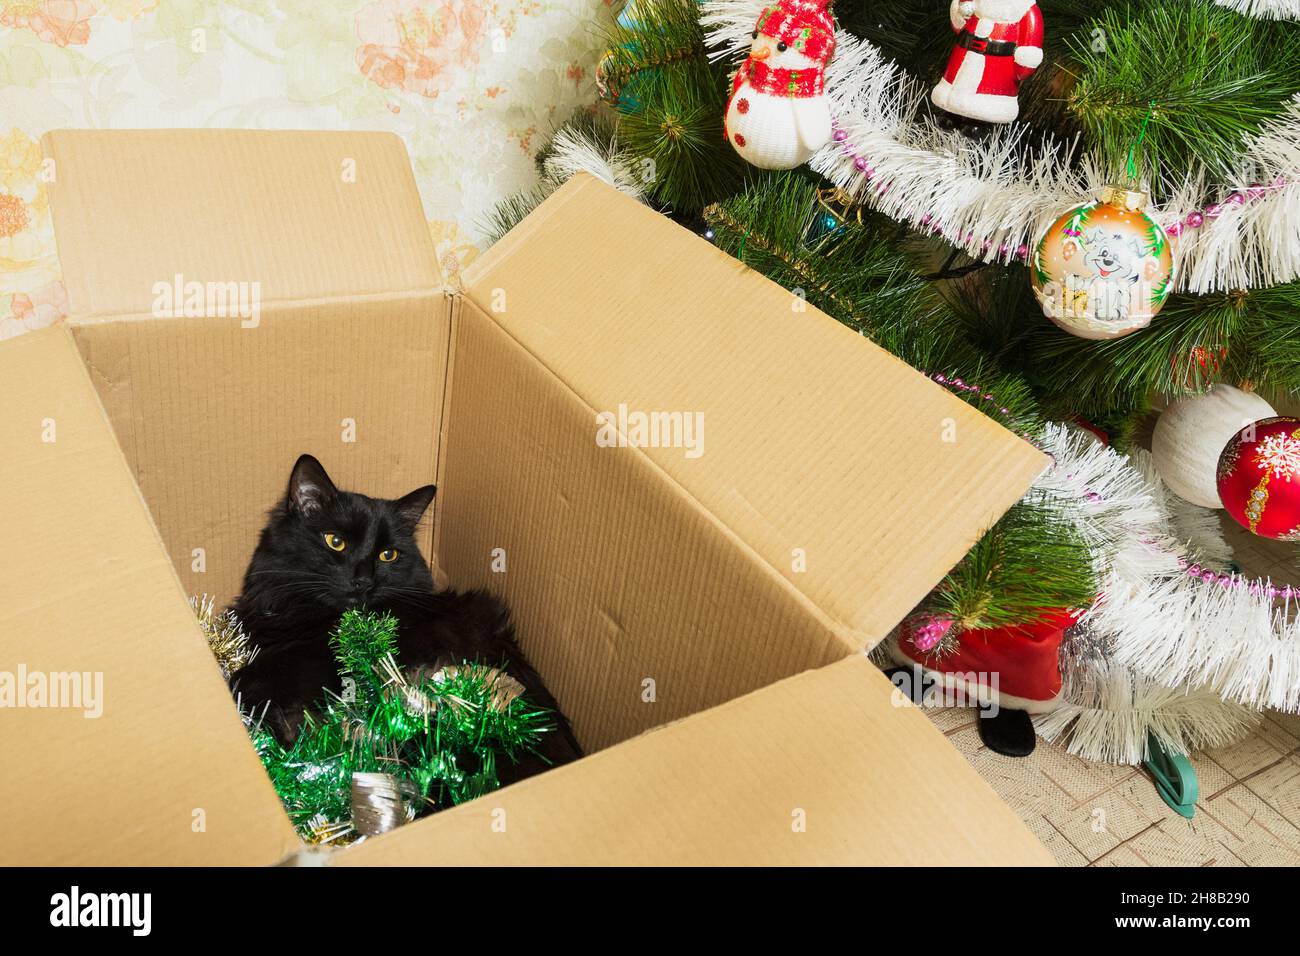 Chat dans une boîte en carton avec guirlande festive, cadeau. Banque D'Images